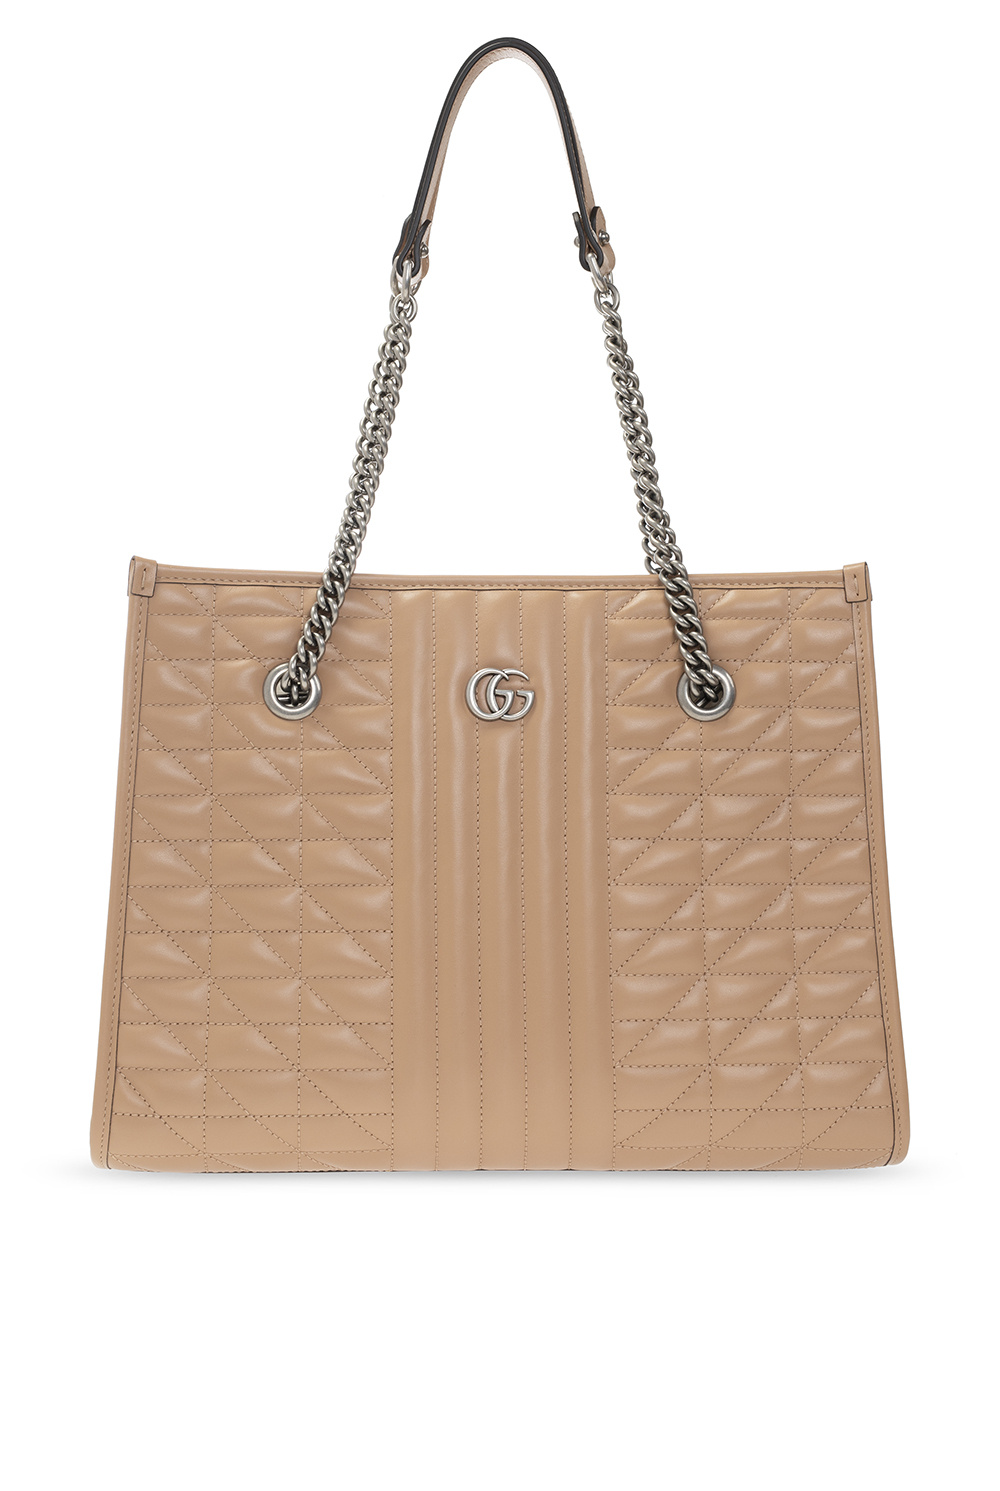 gucci ACTIVEWEAR ‘Marmont Medium’ shopper bag